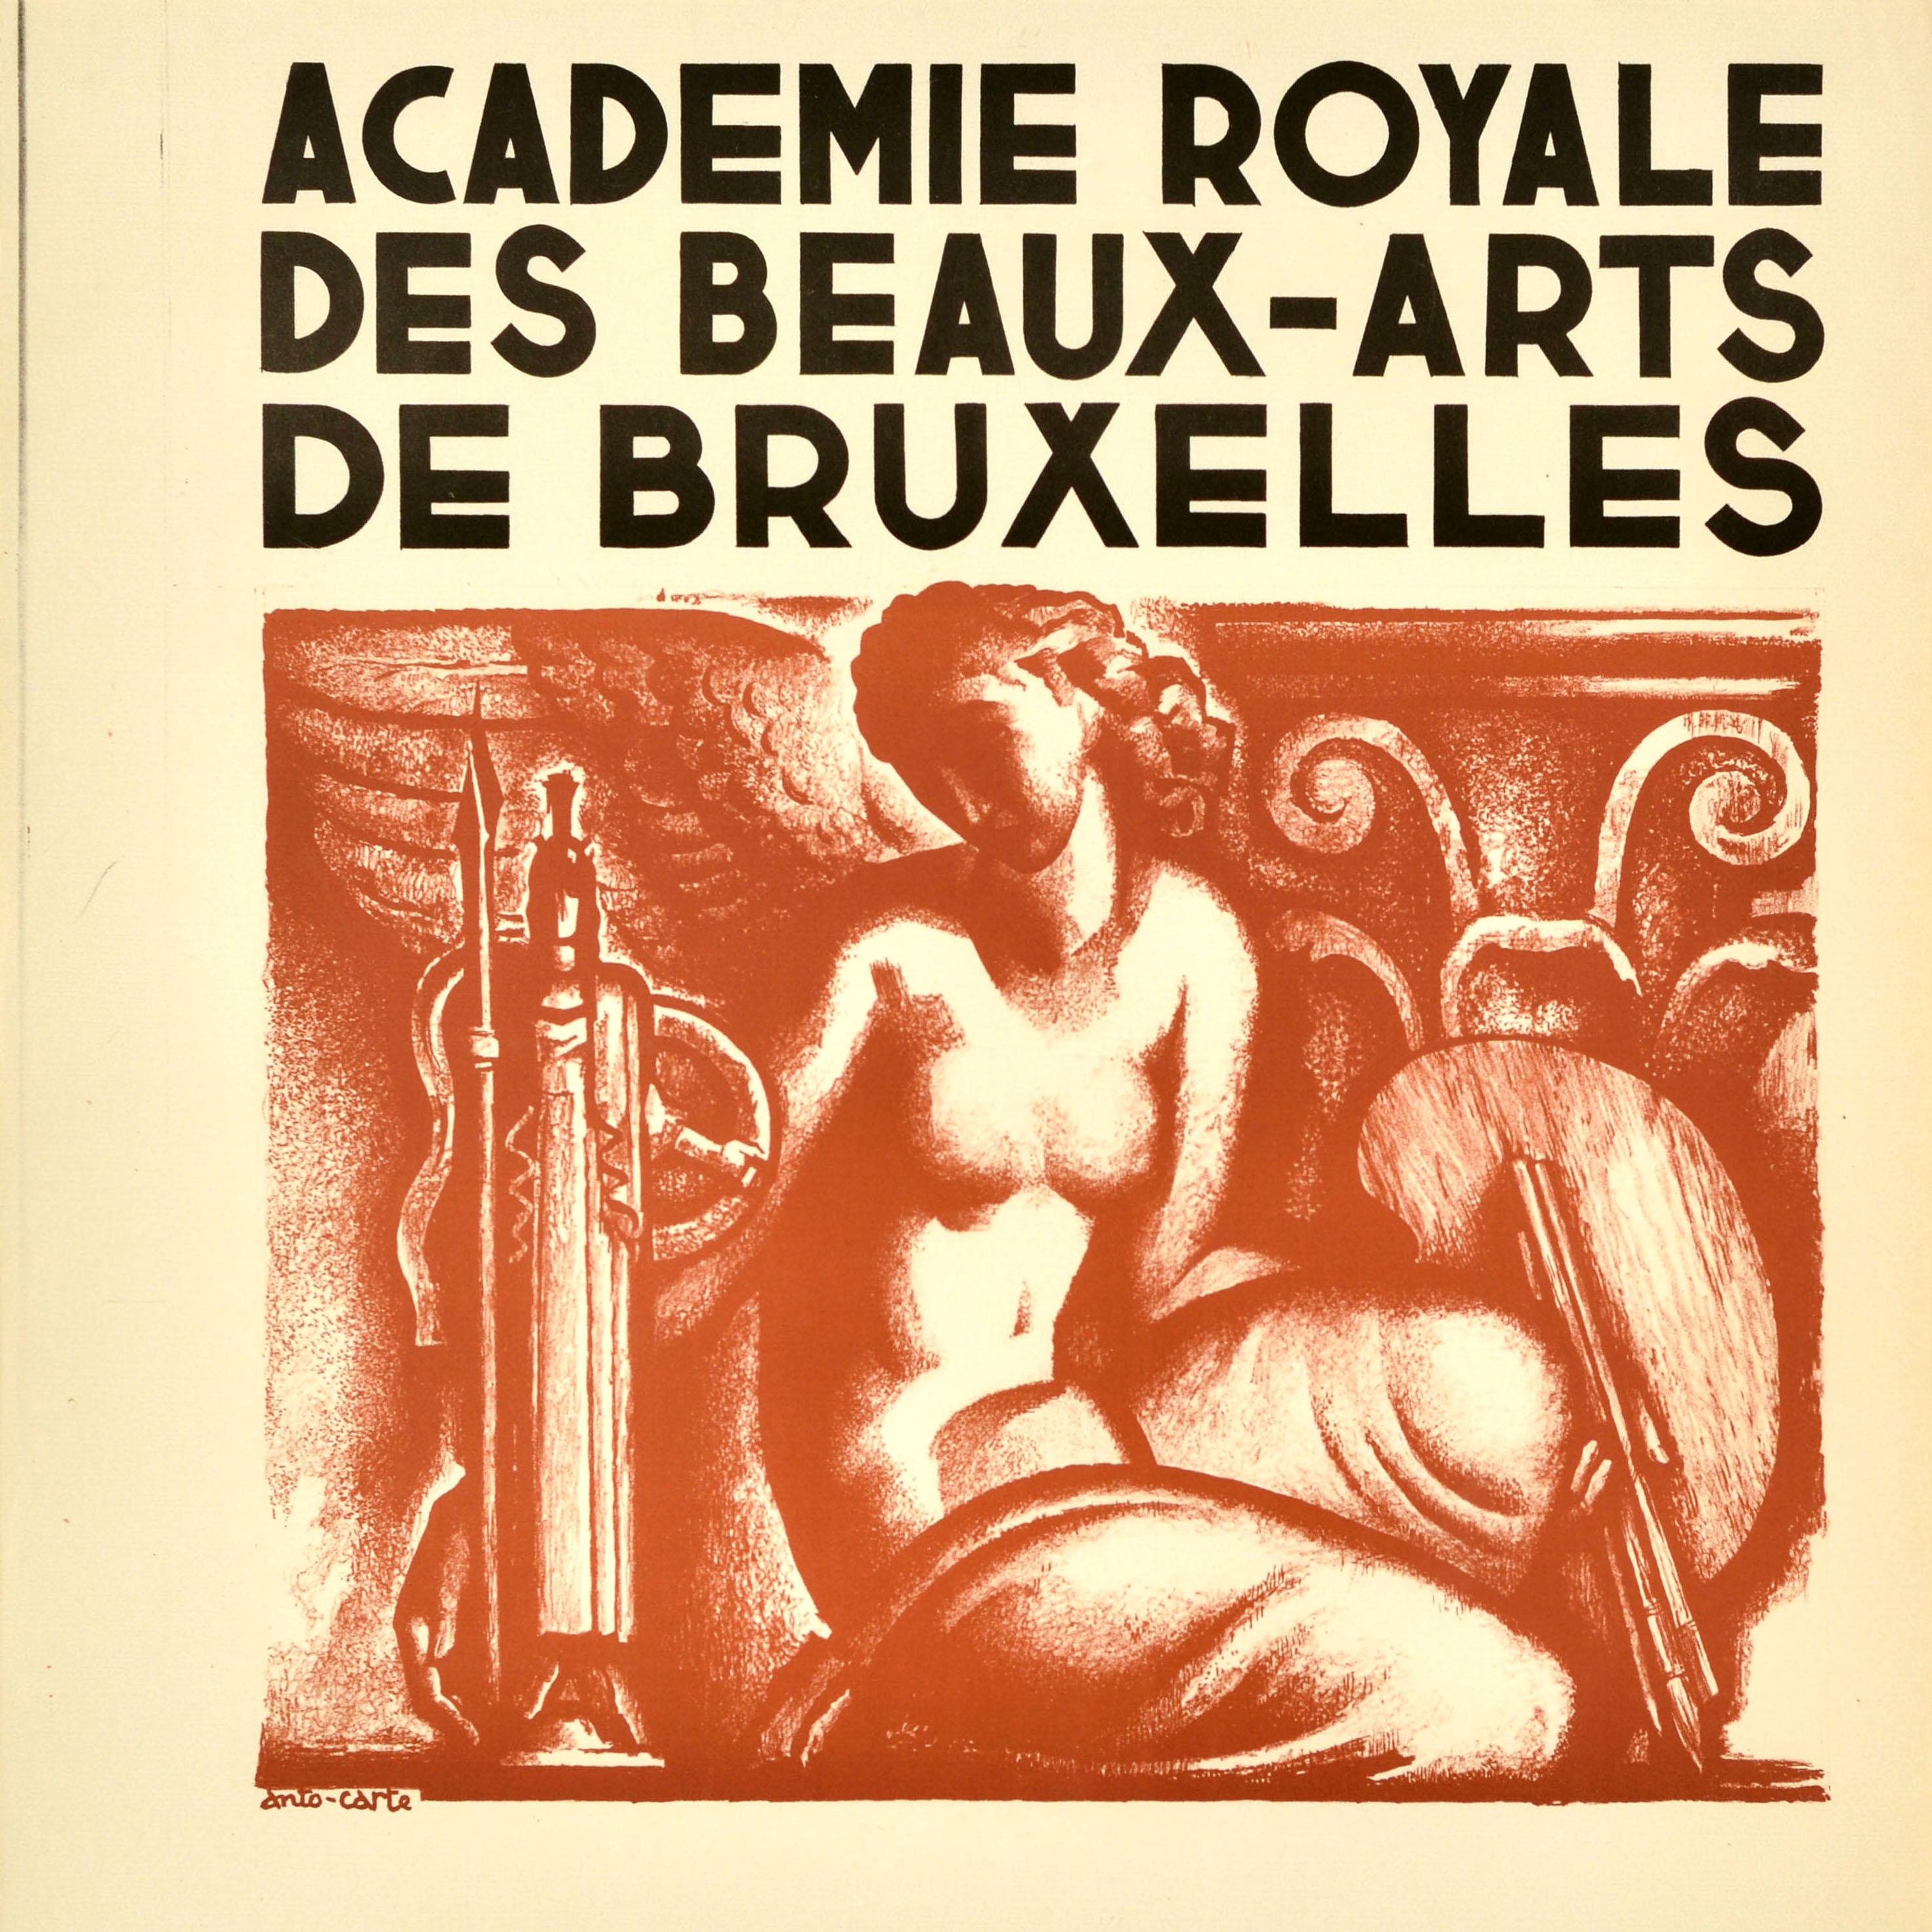 Belgian Original Vintage Advertising Poster Royal Academy Of Fine Arts Brussels Carte For Sale